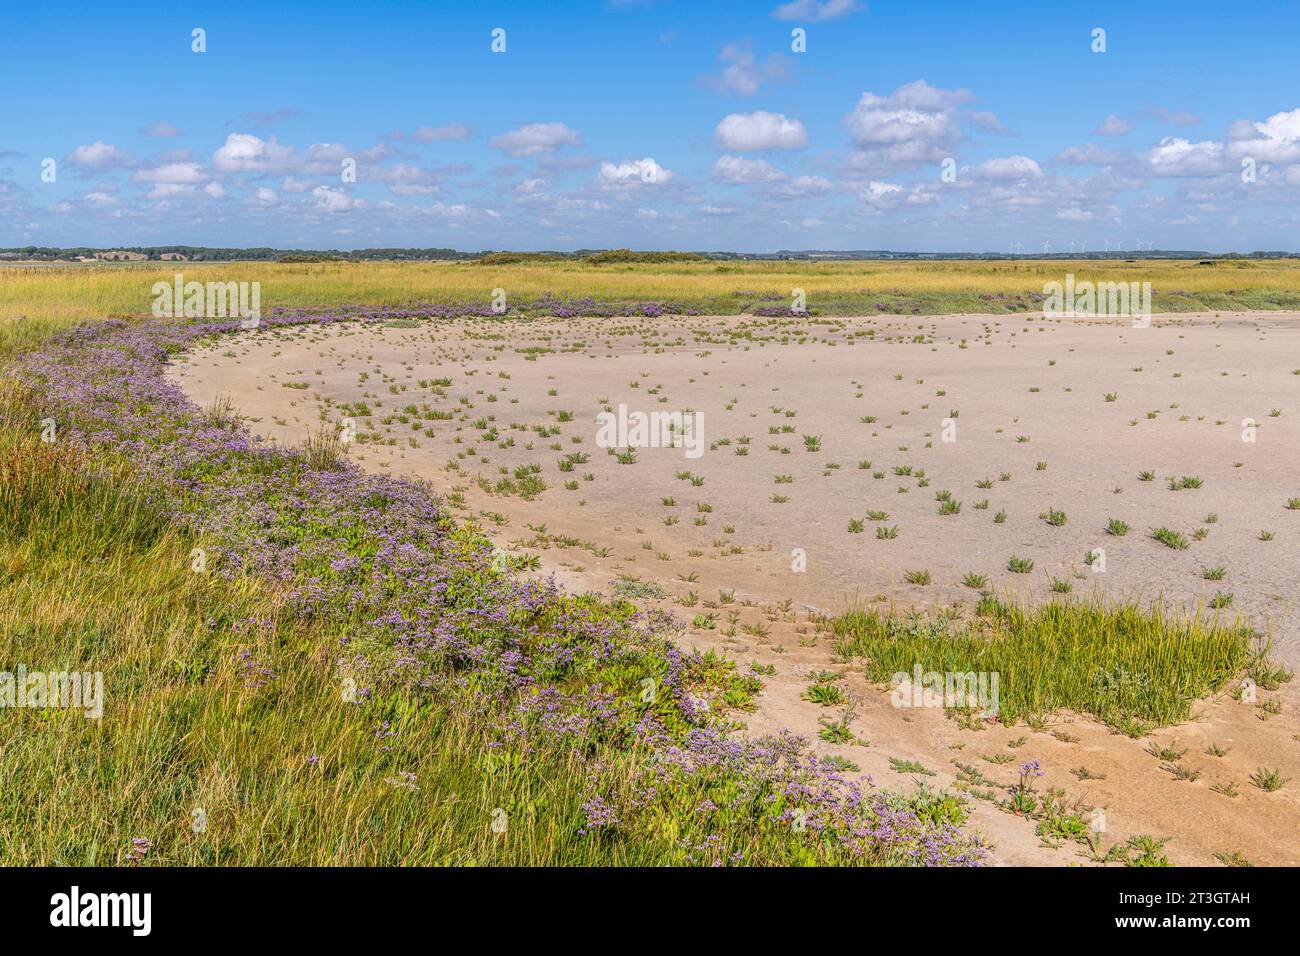 France, somme, Baie d'Authie, fort-Mahon, Baie d'Authie couverte de lilas de mer (sauvage Statica) Banque D'Images